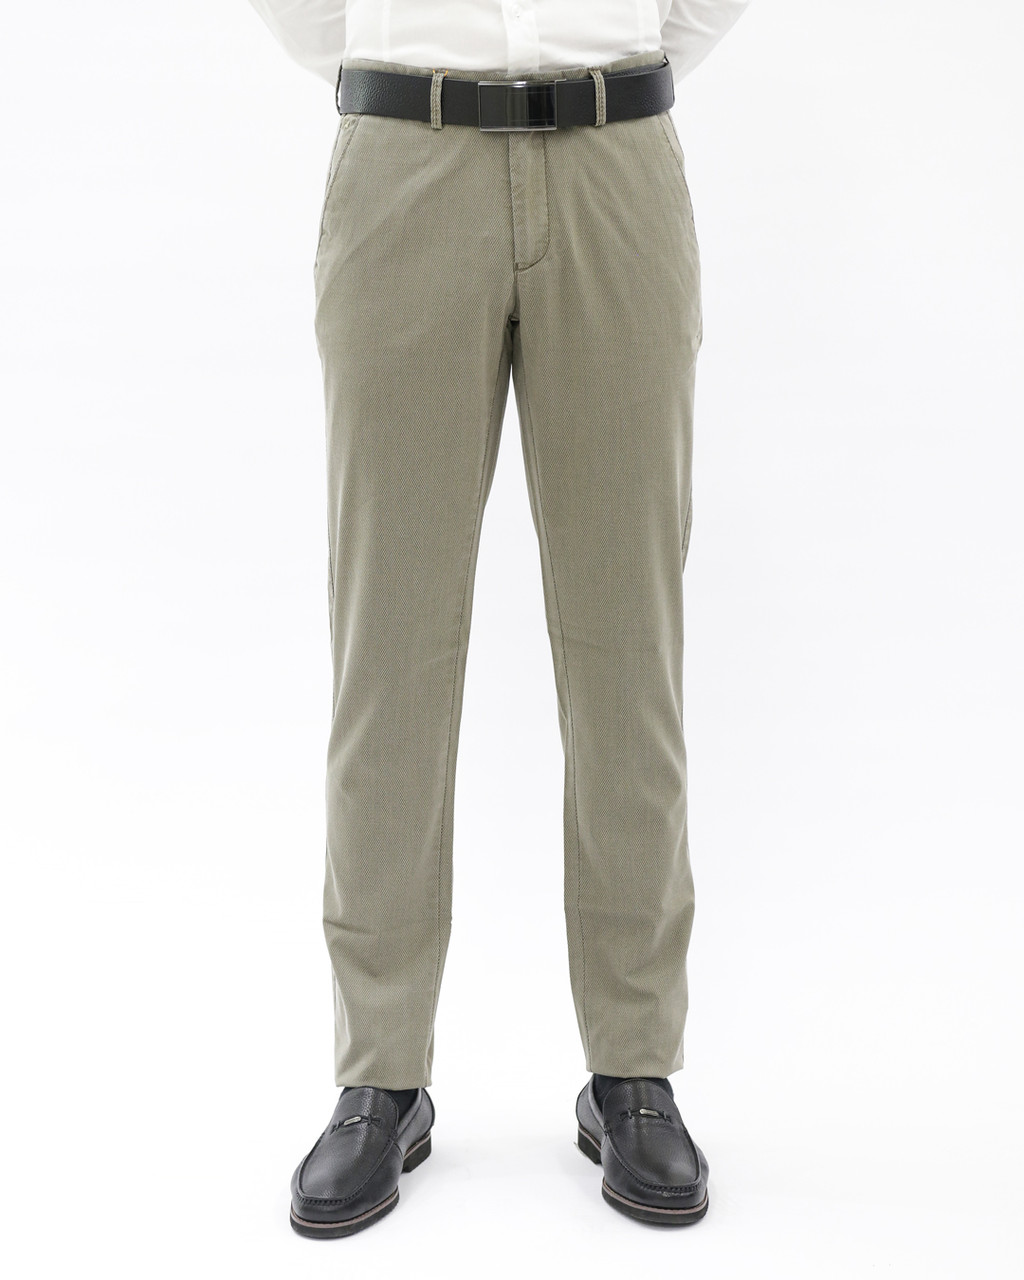 Мужские повседневные брюки «UM&H 986710077» бежевый, фото 1